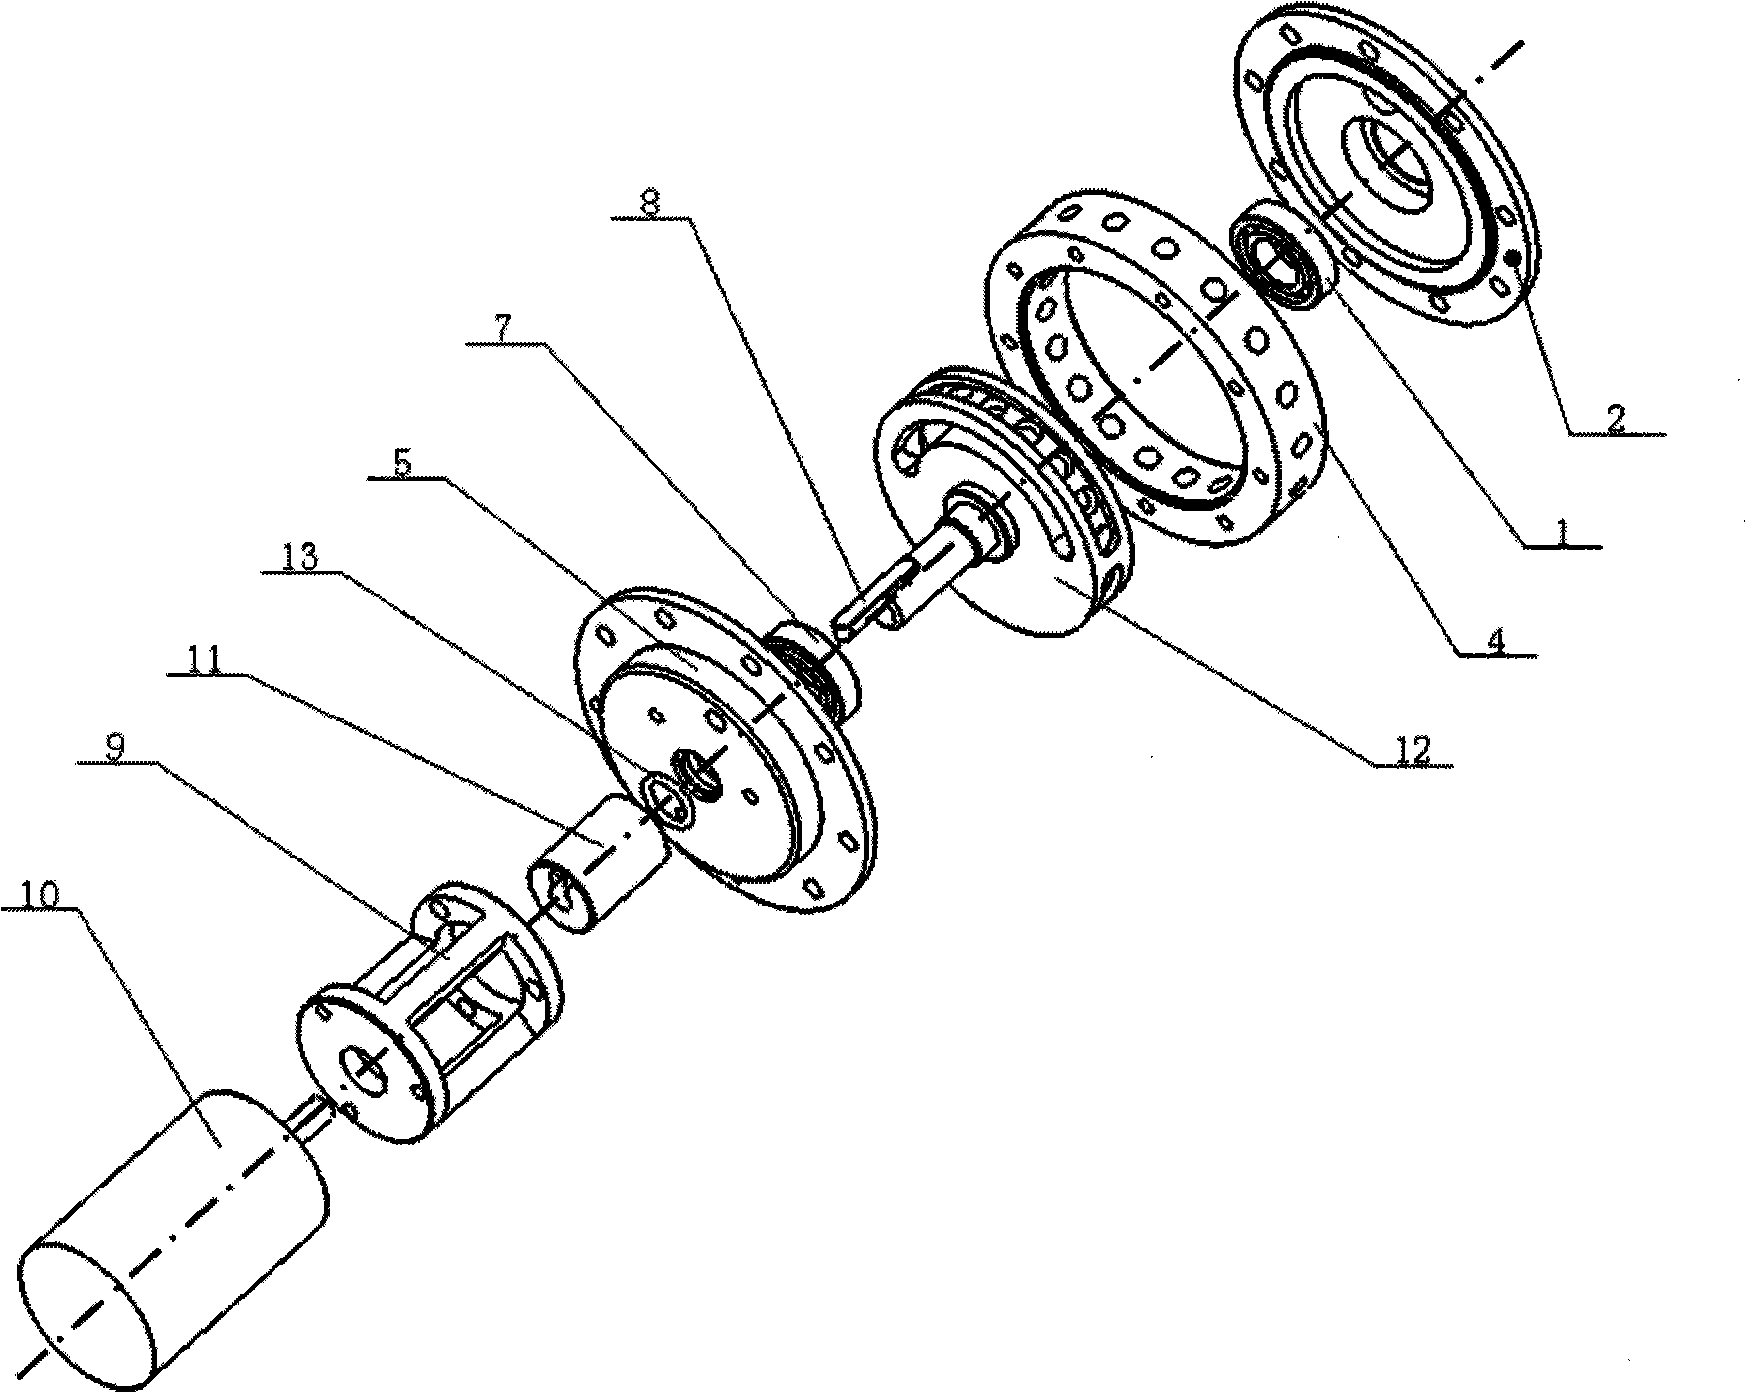 Rotary type fluid-distributing valve